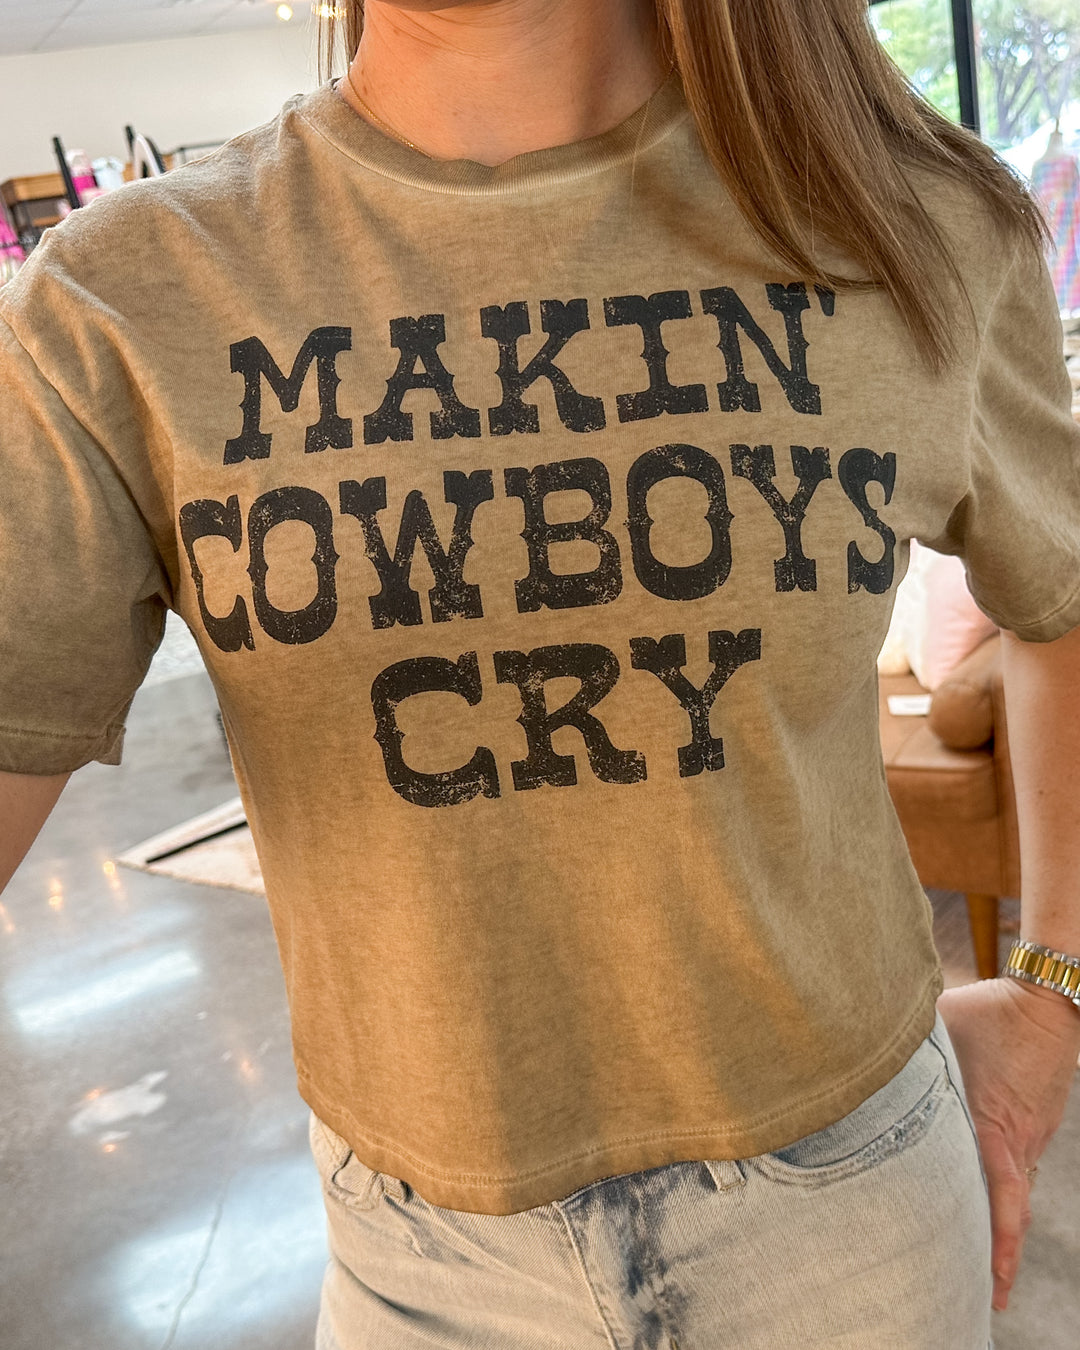 Makin Cowboys Cry Crop Tee